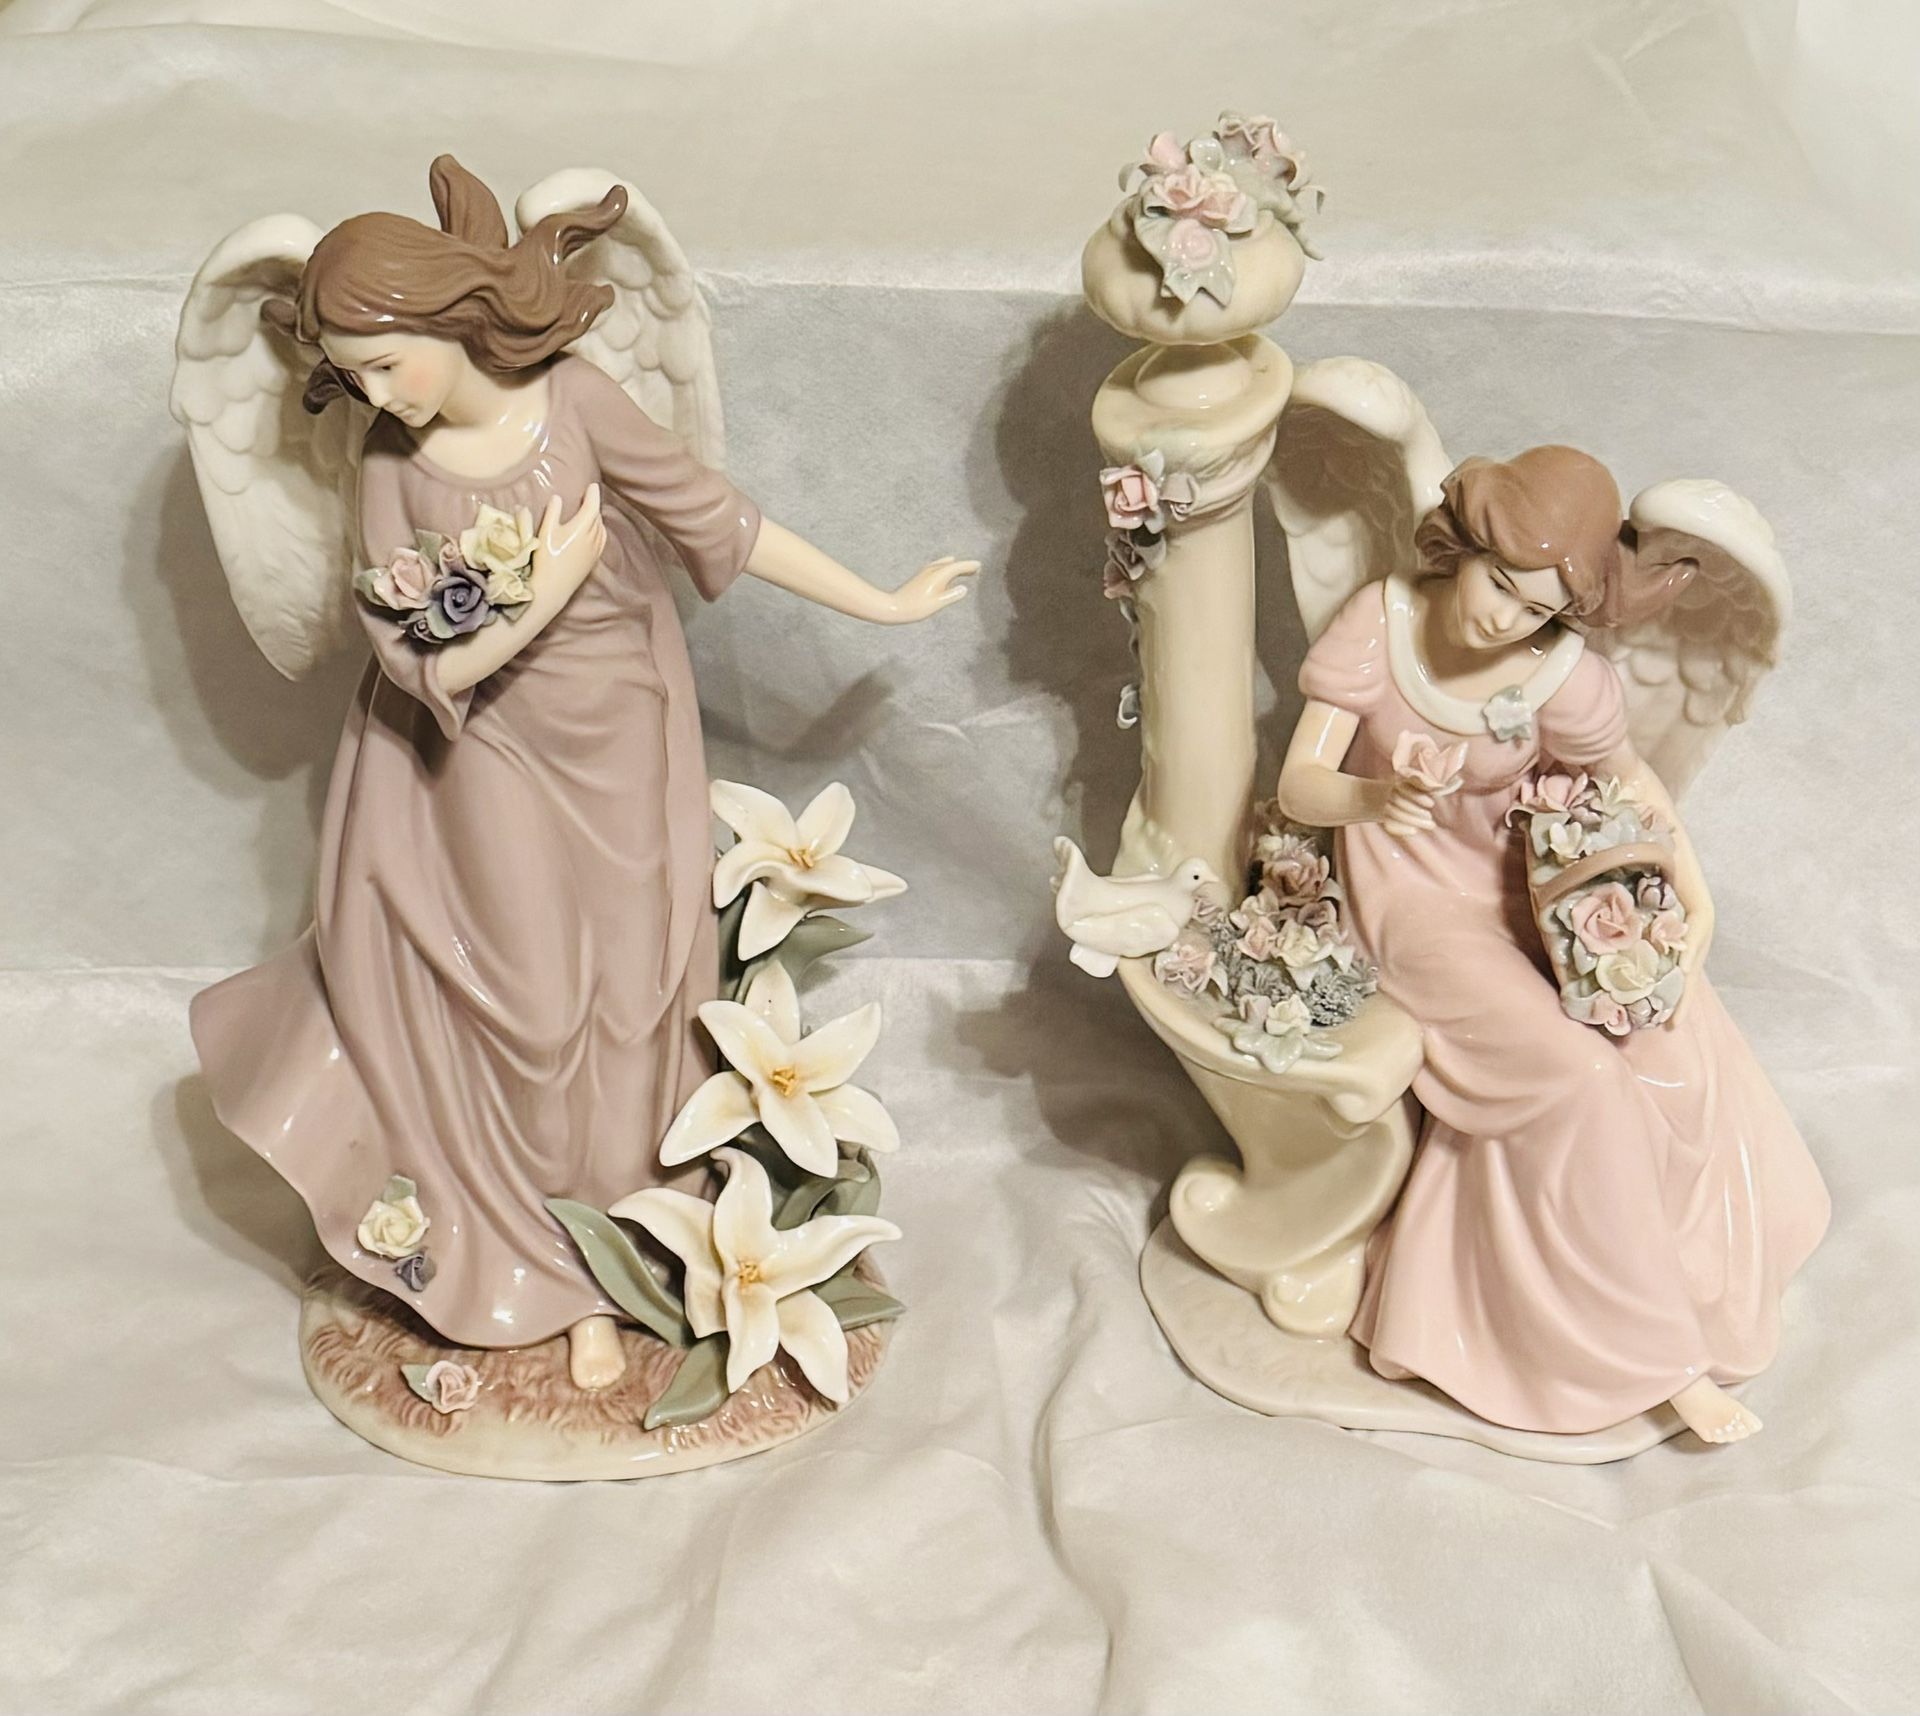 4 Porcelain Angels Figures